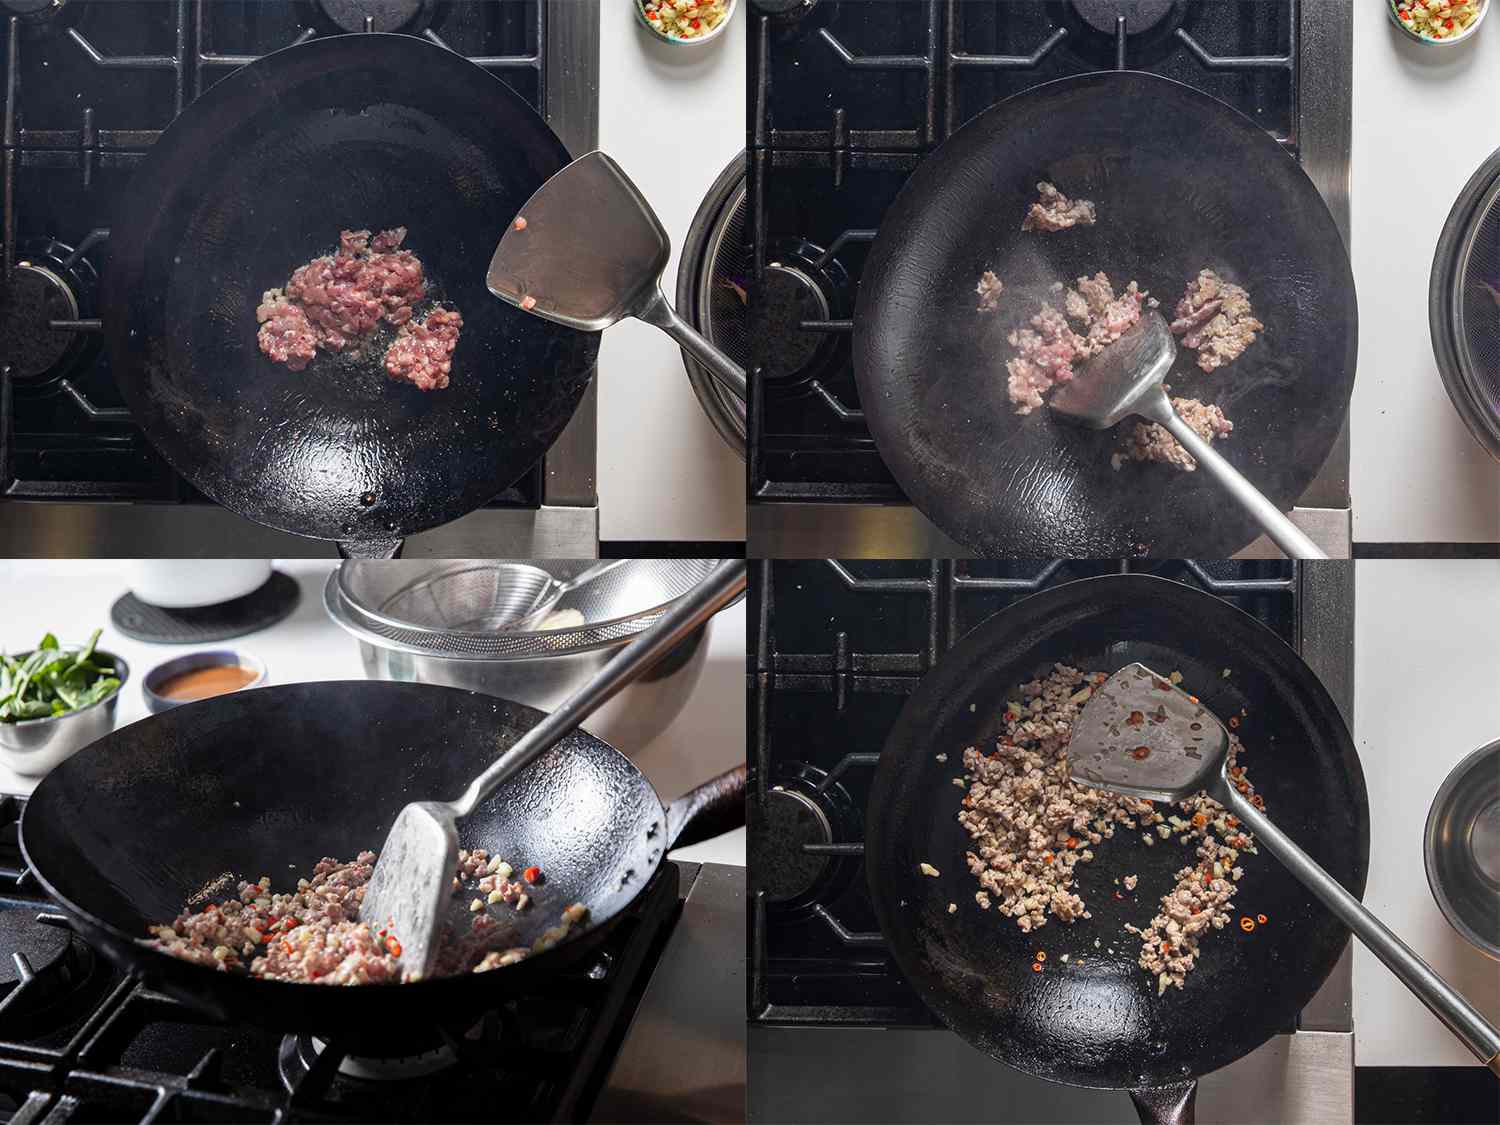 四张照片拼贴:锅里的猪肉加油，金属刮刀翻炒猪肉，搅拌辣椒的侧视图，锅里煮熟的猪肉和辣椒的俯视图